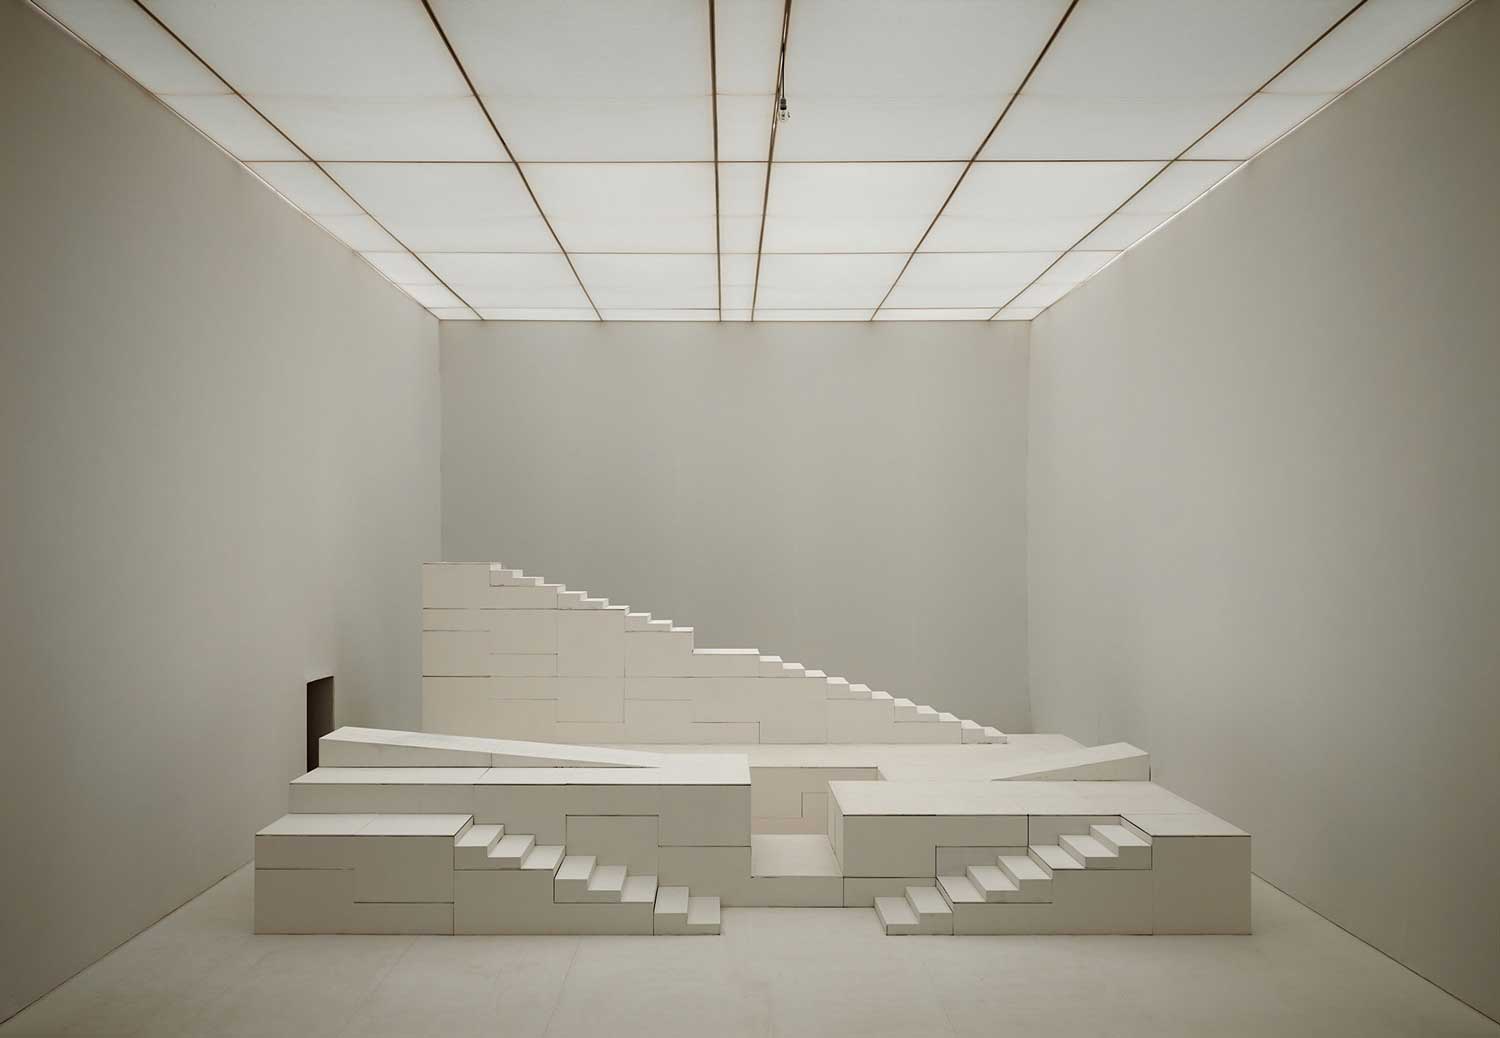 Foto, schwarz-weiß, innen: Mehrere quaderförmige bewegliche Bühnenelemente, darunter zwei Treppen.